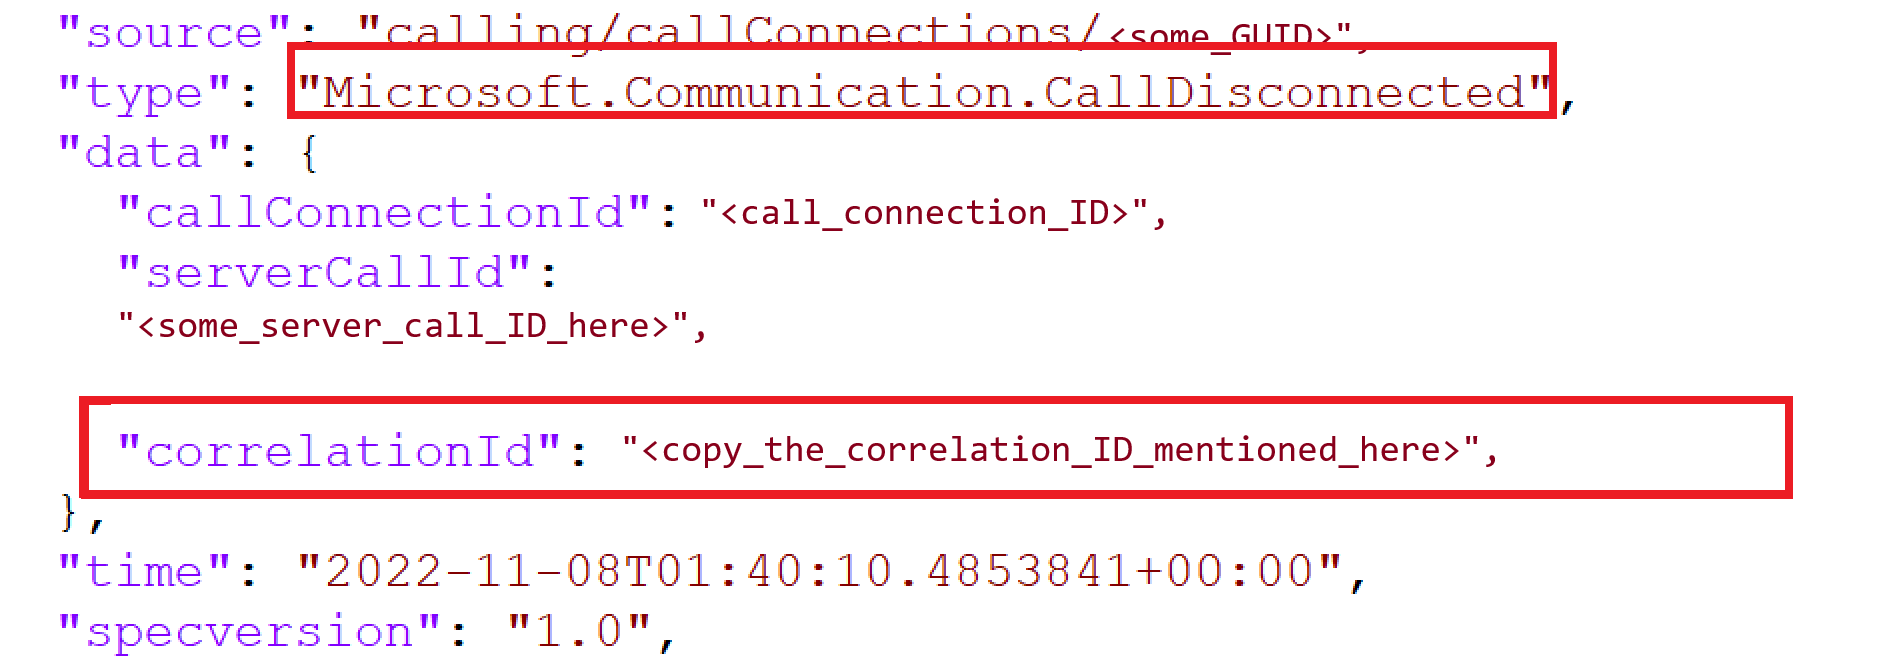 Captura de tela do evento de chamada desconectada mostrando a ID de correlação.